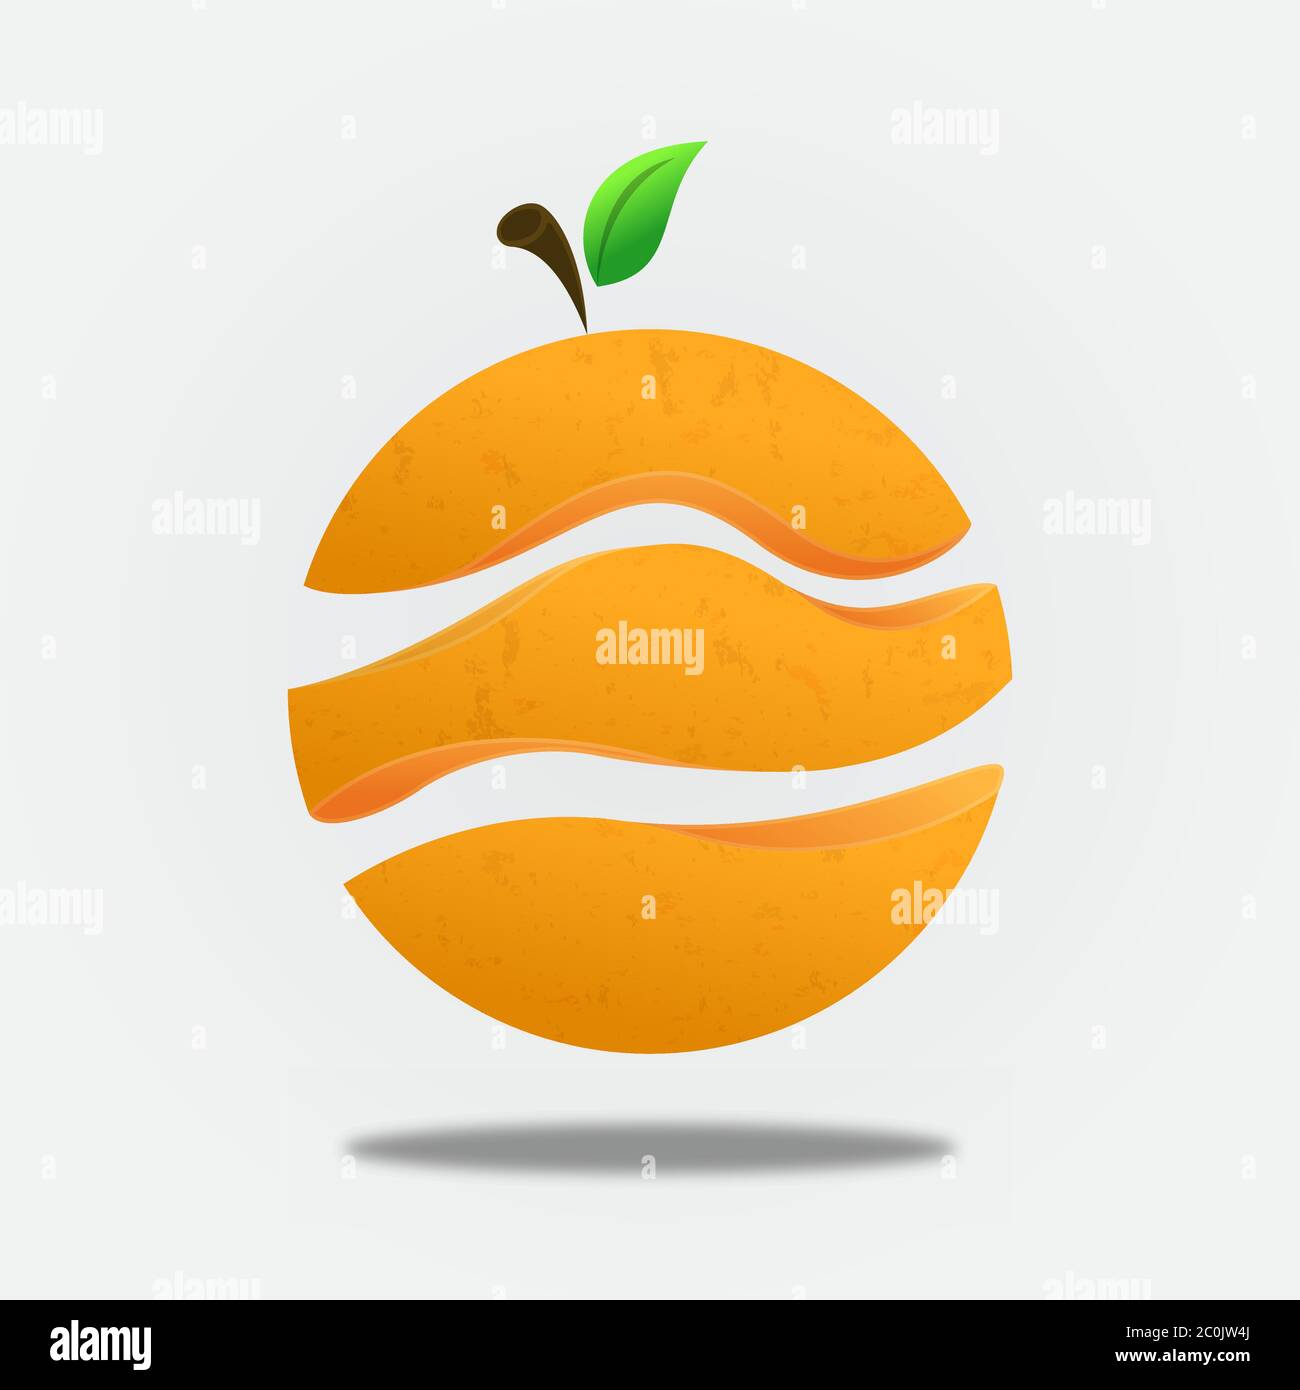 Bunte orange Früchte auf isoliertem weißem Hintergrund geschnitten. Frische natürliche Lebensmittel Illustration für gesunde vegetarische Ernährung oder Bio-Produkt-Konzept. Stock Vektor